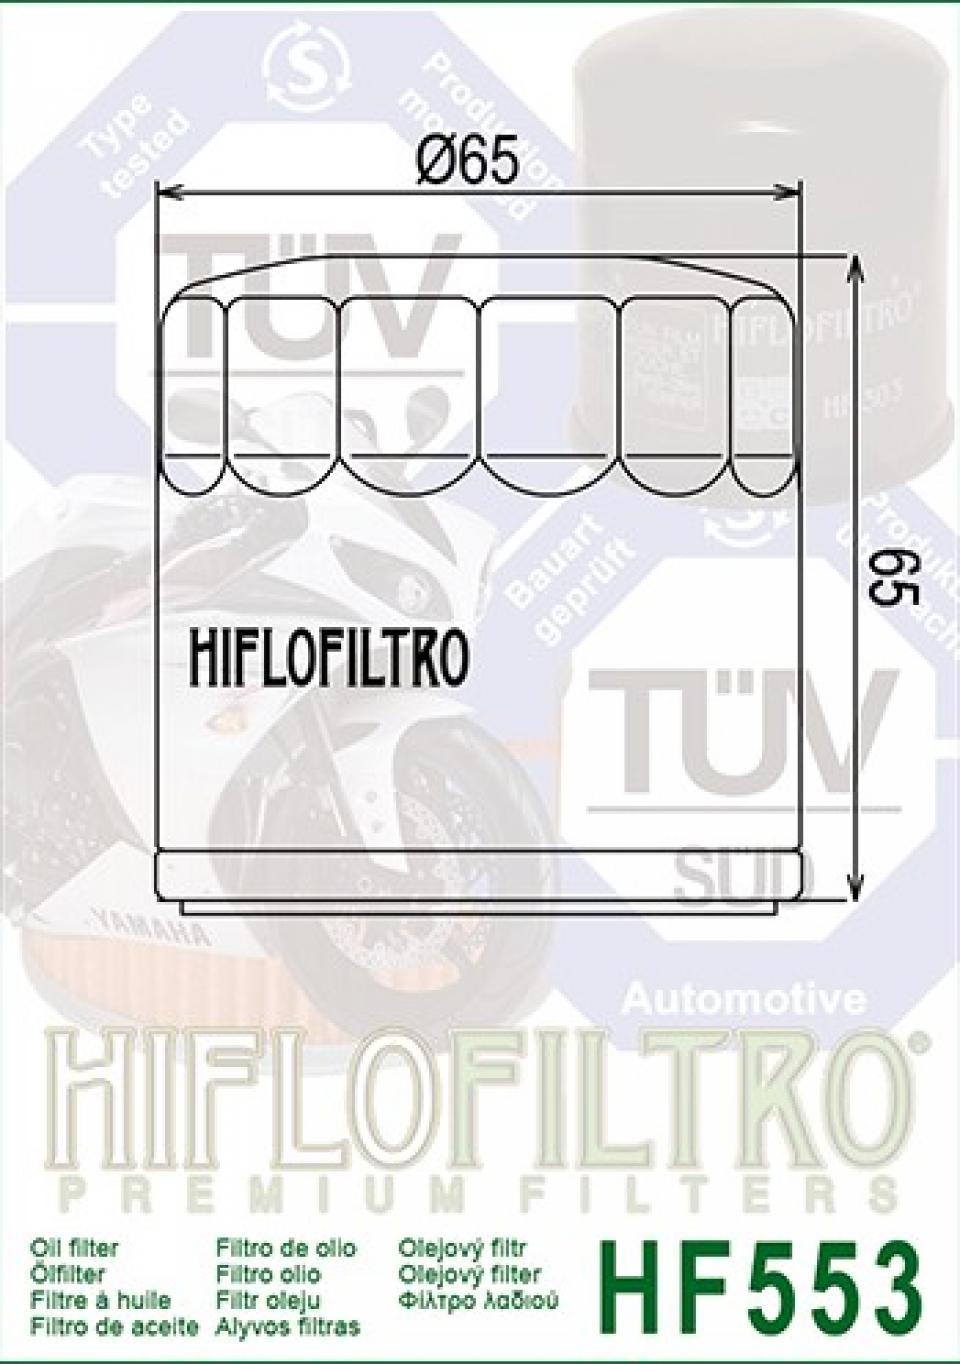 Filtre à huile Hiflofiltro pour Moto Benelli 900 TORNADO RS 2004 à 2005 Neuf